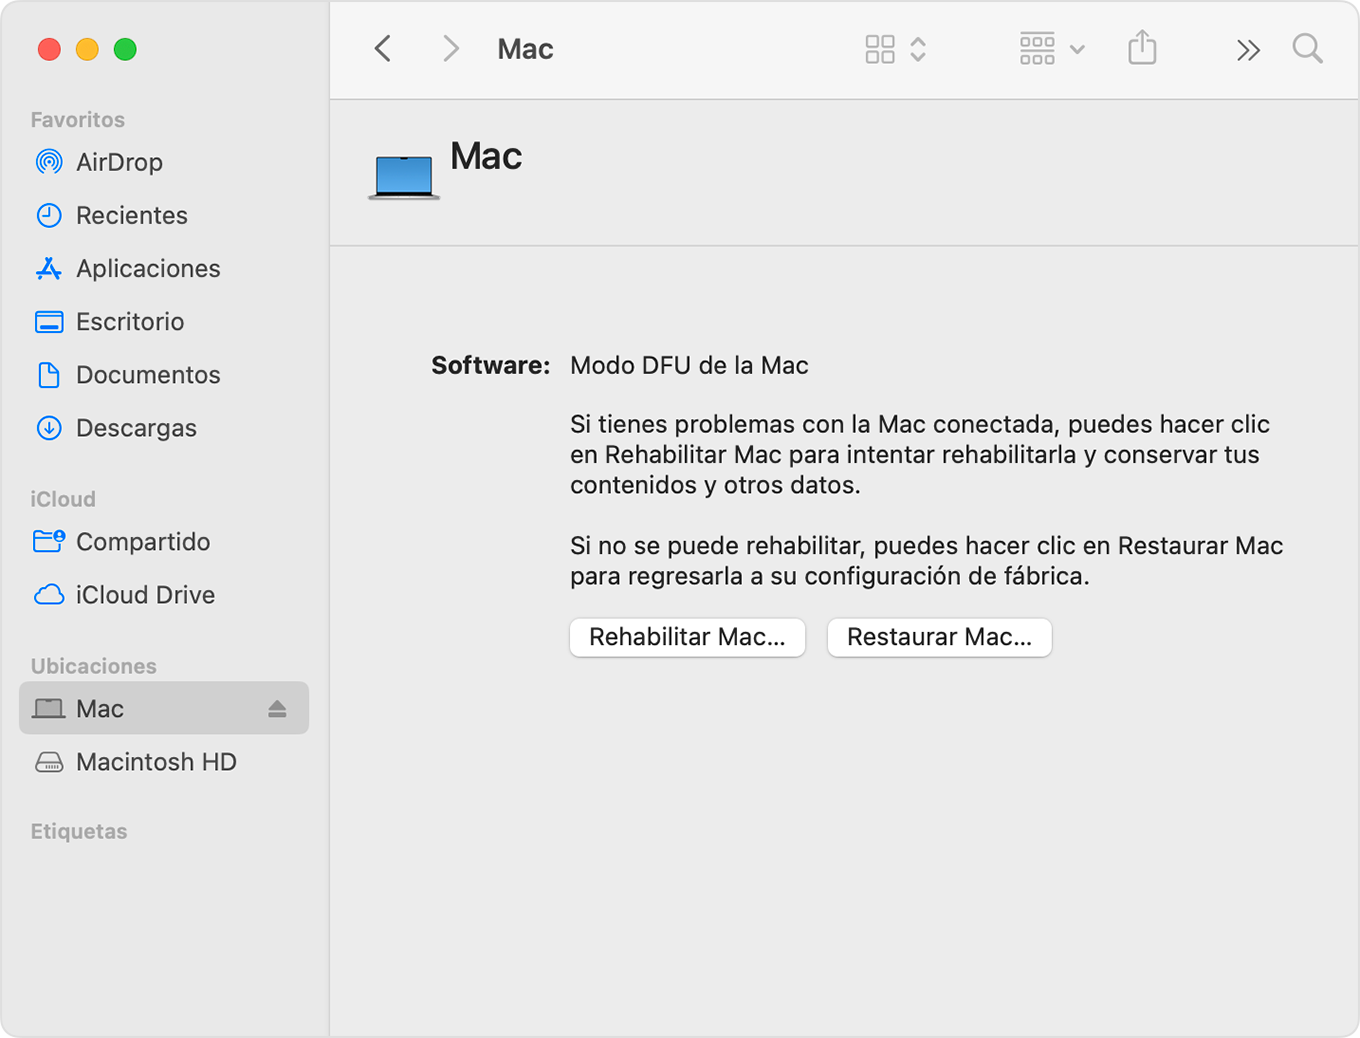 Ventana de Finder que muestra la opción "Mac" seleccionada en la barra lateral